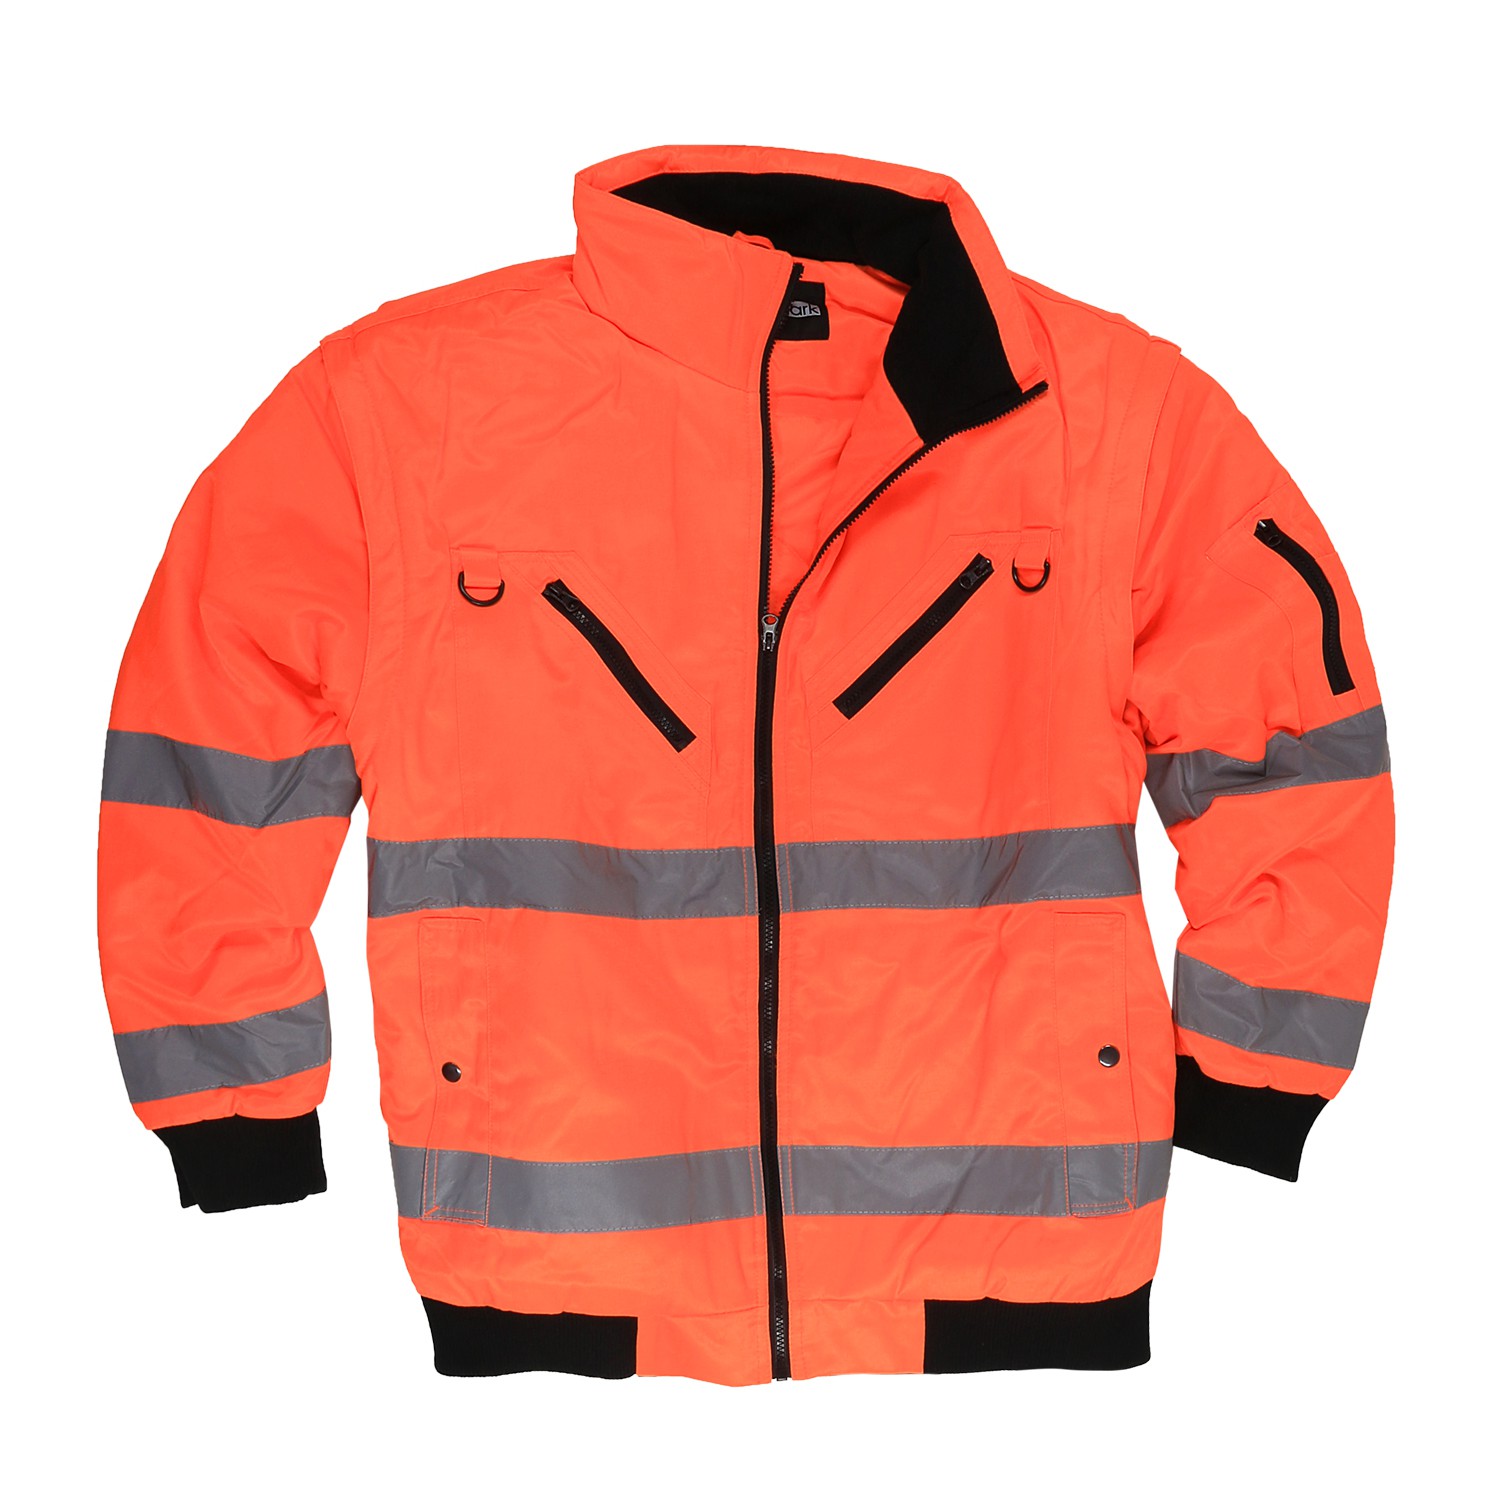 Veste de travail / Veste aviateur orange de marc&mark grandes tailles jusqu'au 10XL